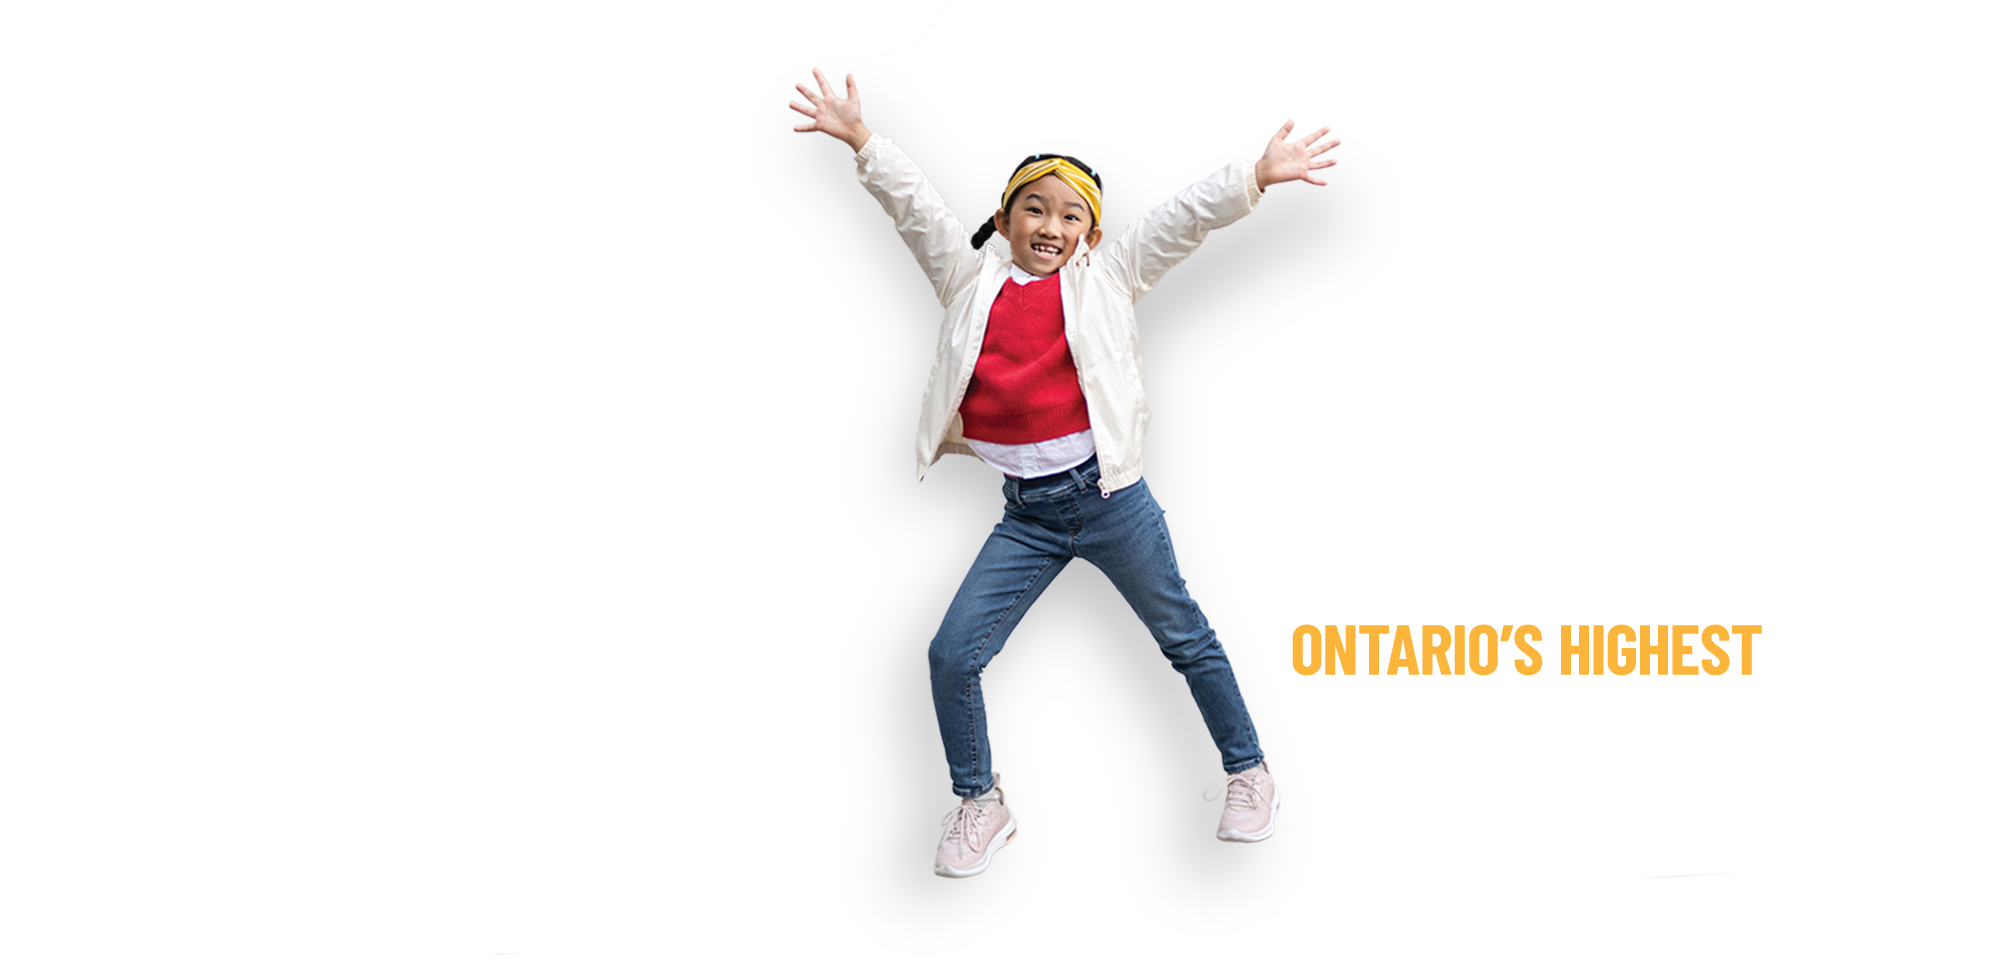 Promising - Ontario's highest graduation rate